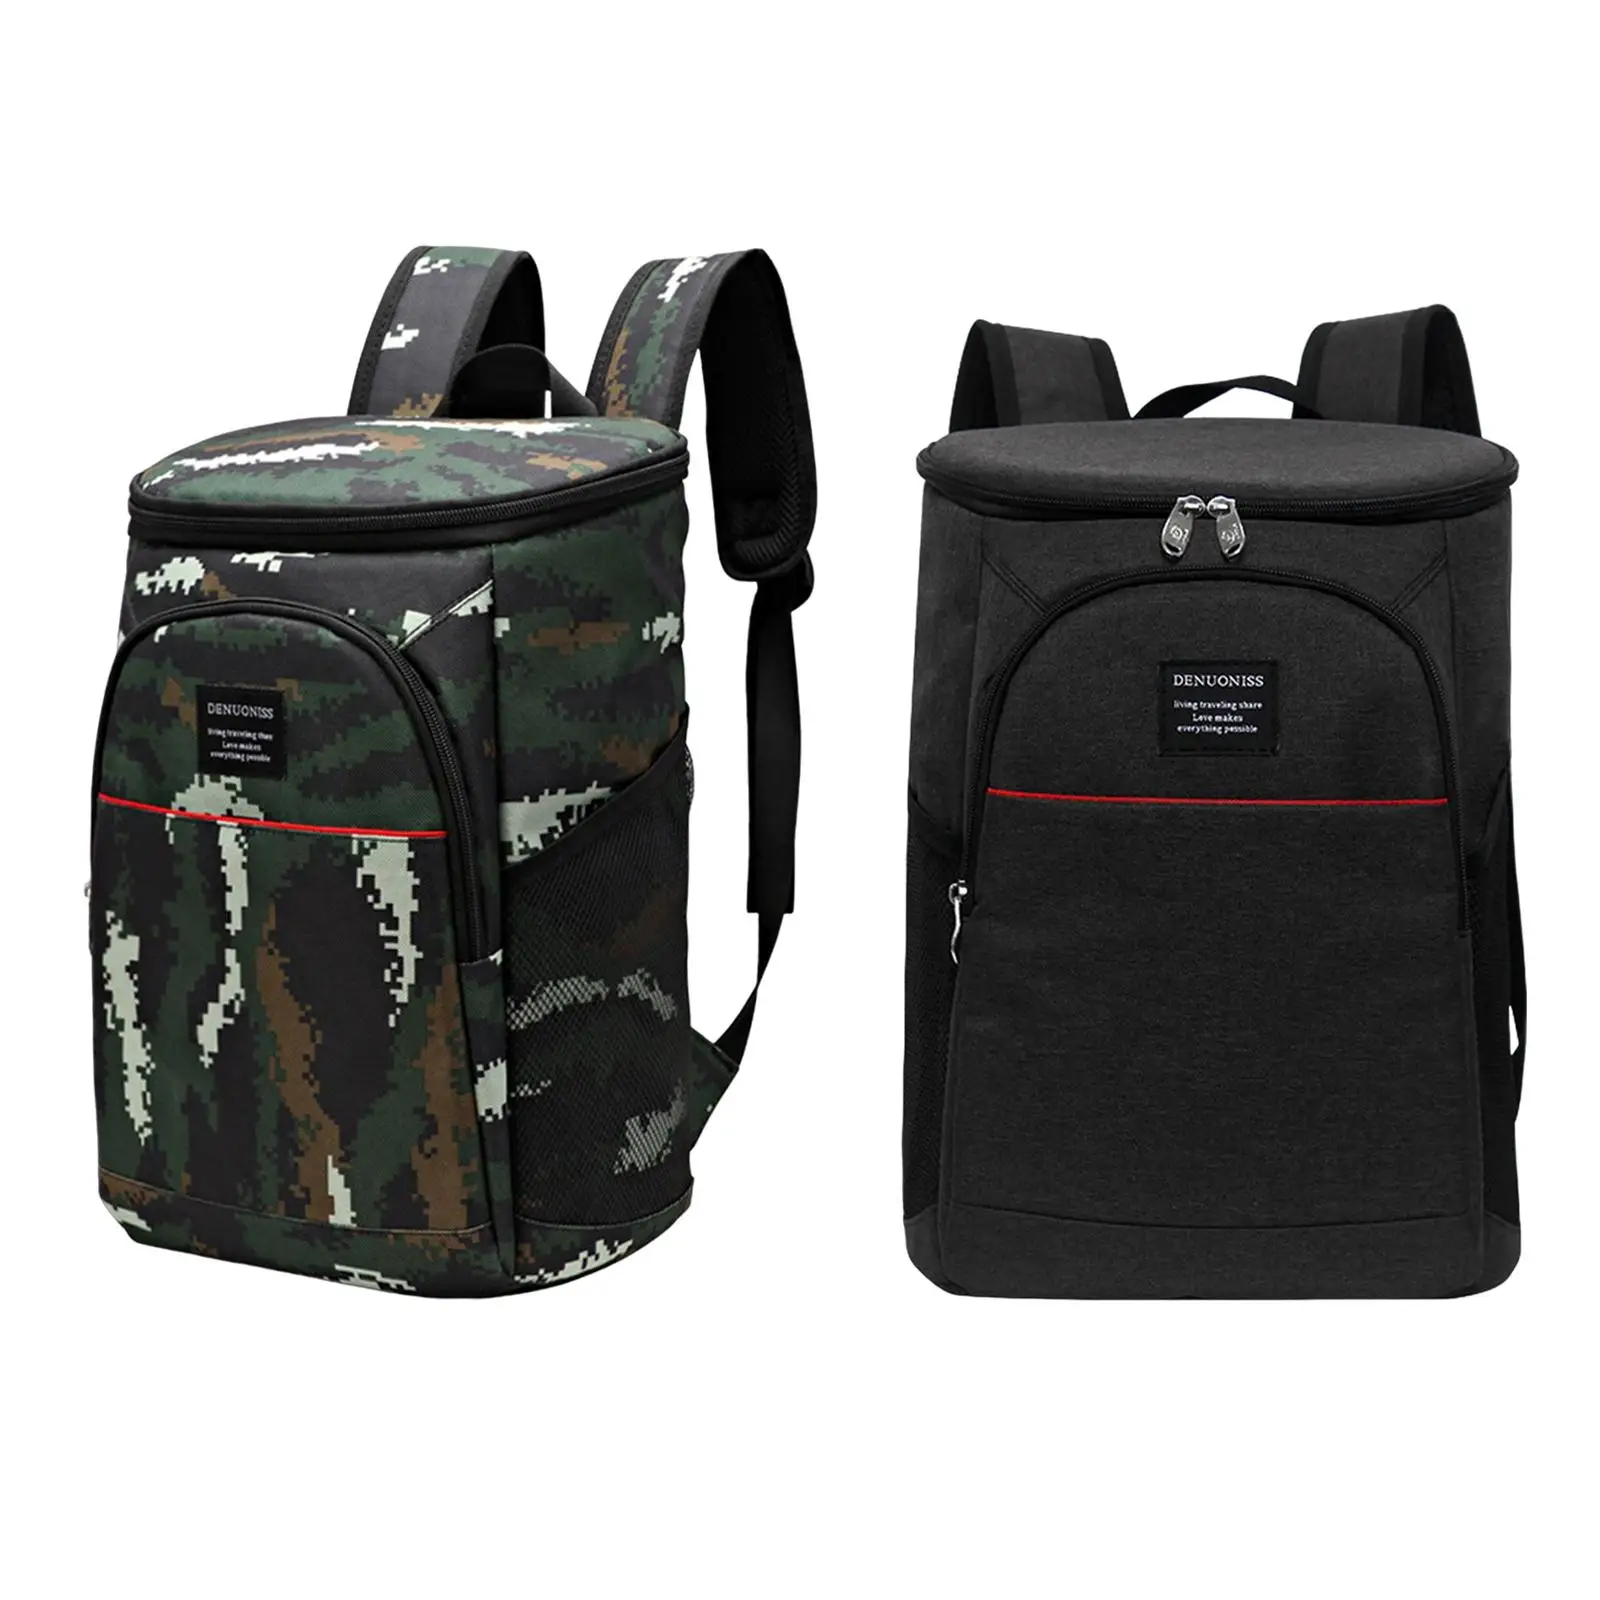 Backpack Cooler Adjustable Shoulder Straps Thermal Bag for Park Picnic Beach